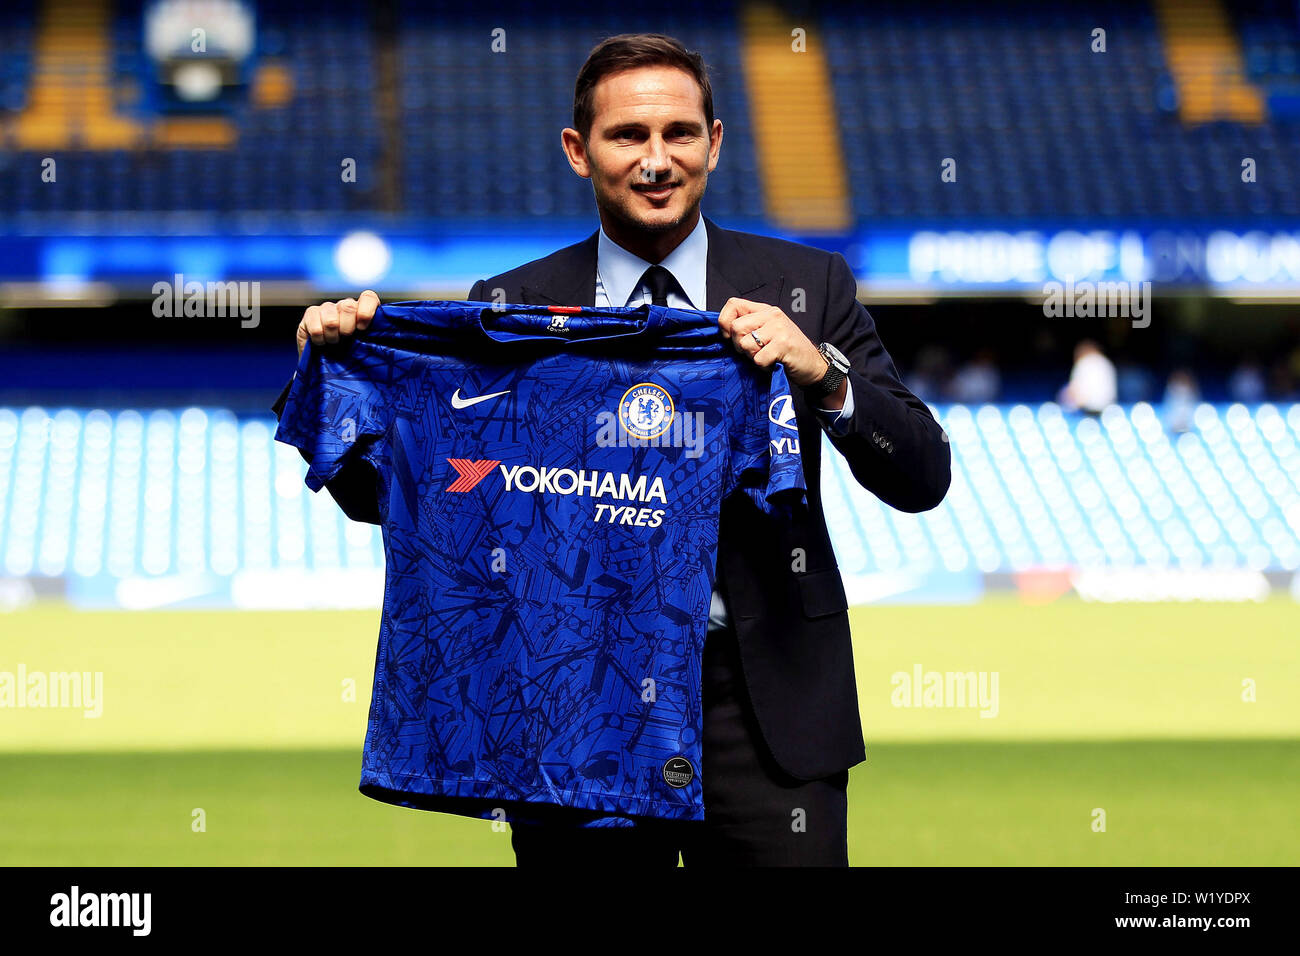 Londres, Reino Unido. 04 Julio, 2019. Nuevo head coach de Chelsea Frank Lampard la Camiseta Chelsea de Bridge. Frank Lampard es anunciado como el nuevo manager de Chelsea FC